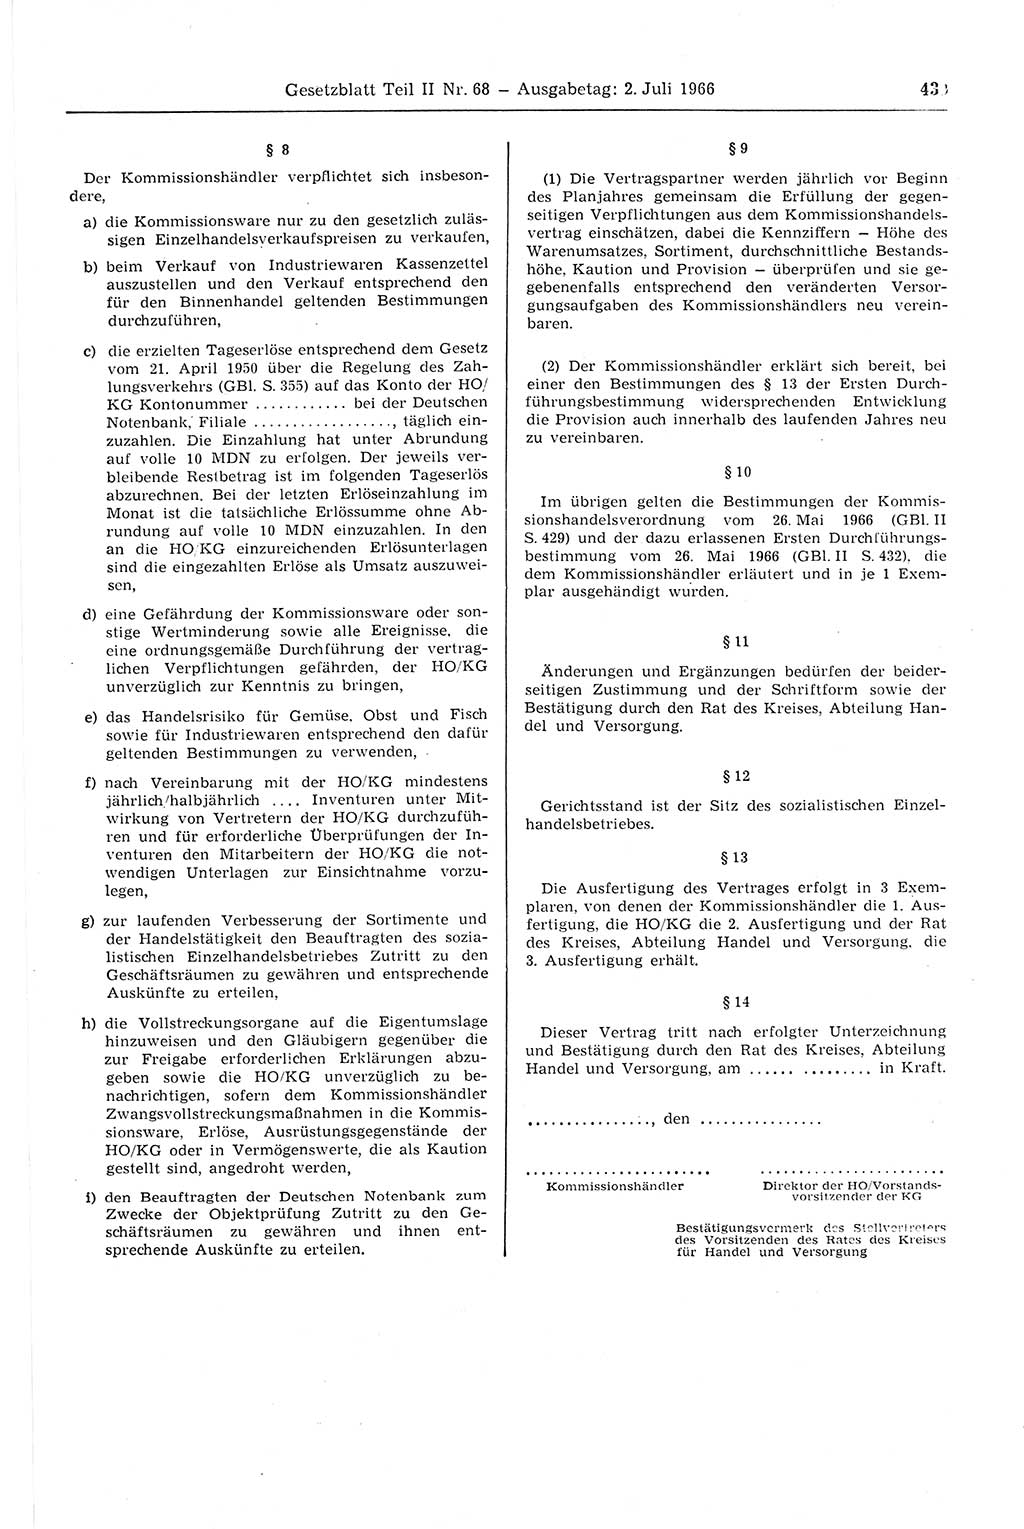 Gesetzblatt (GBl.) der Deutschen Demokratischen Republik (DDR) Teil ⅠⅠ 1966, Seite 439 (GBl. DDR ⅠⅠ 1966, S. 439)